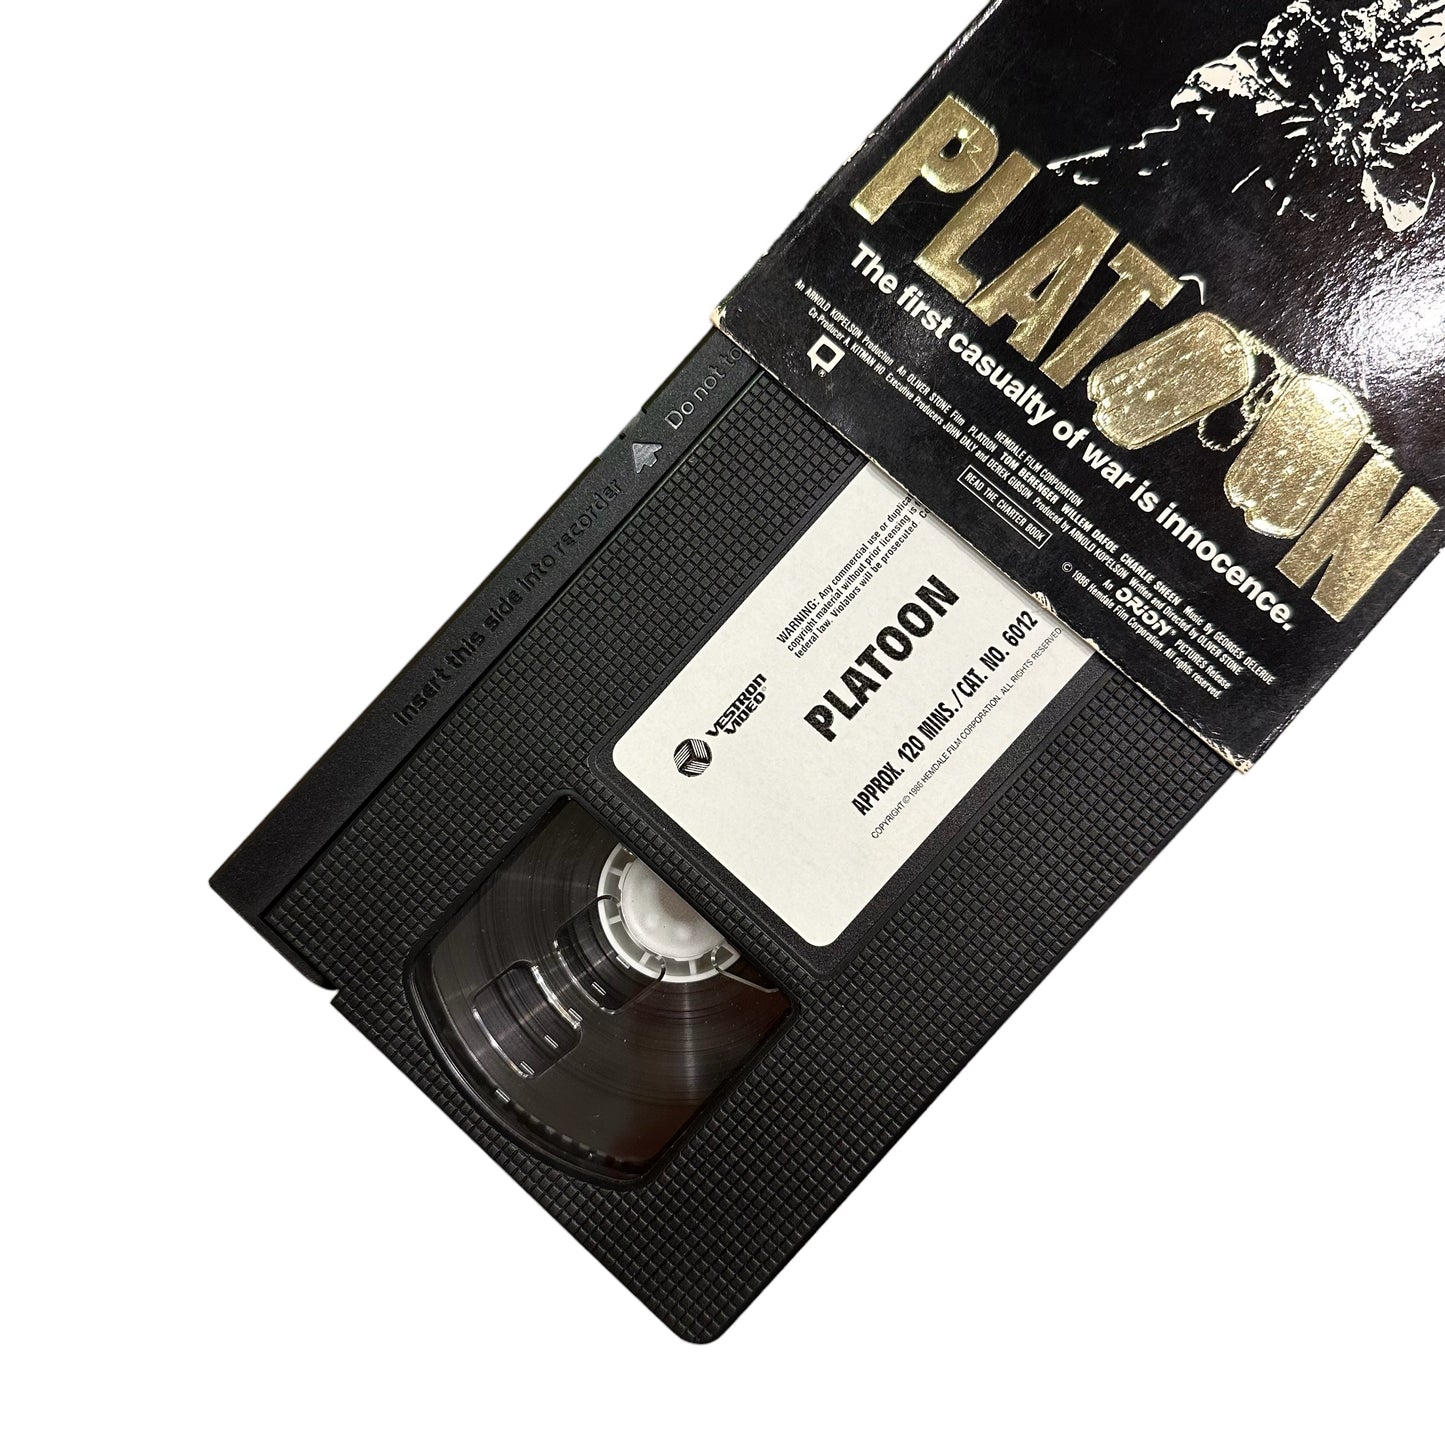 VHS ビデオテープ 輸入版 プラトーンPlatoon 海外版 USA アメリカ ヴィンテージ ビデオ 紙ジャケ